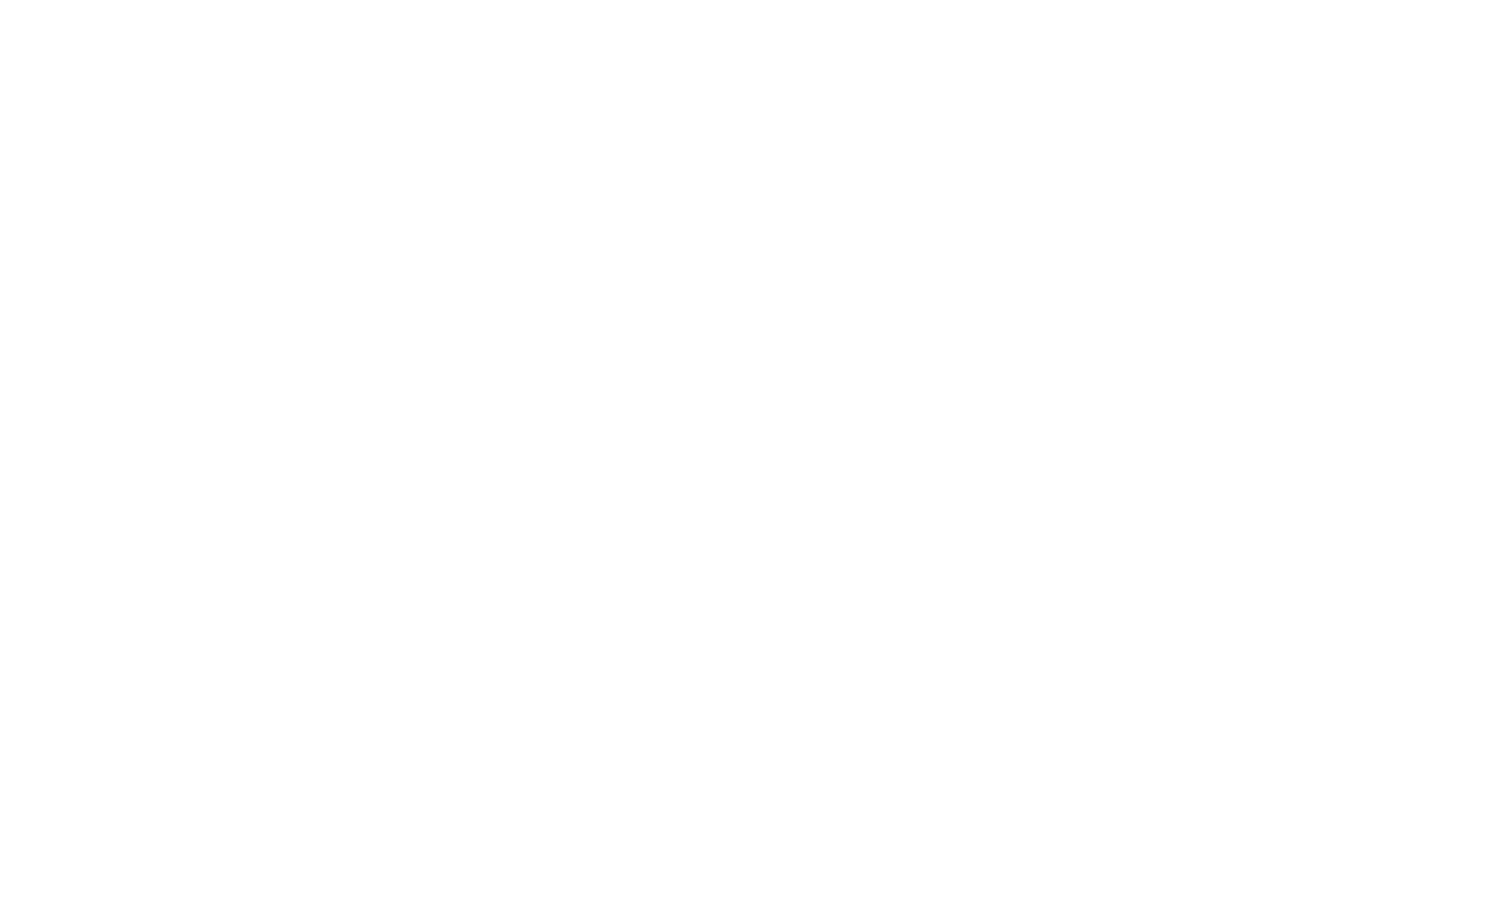 Speakers Corner